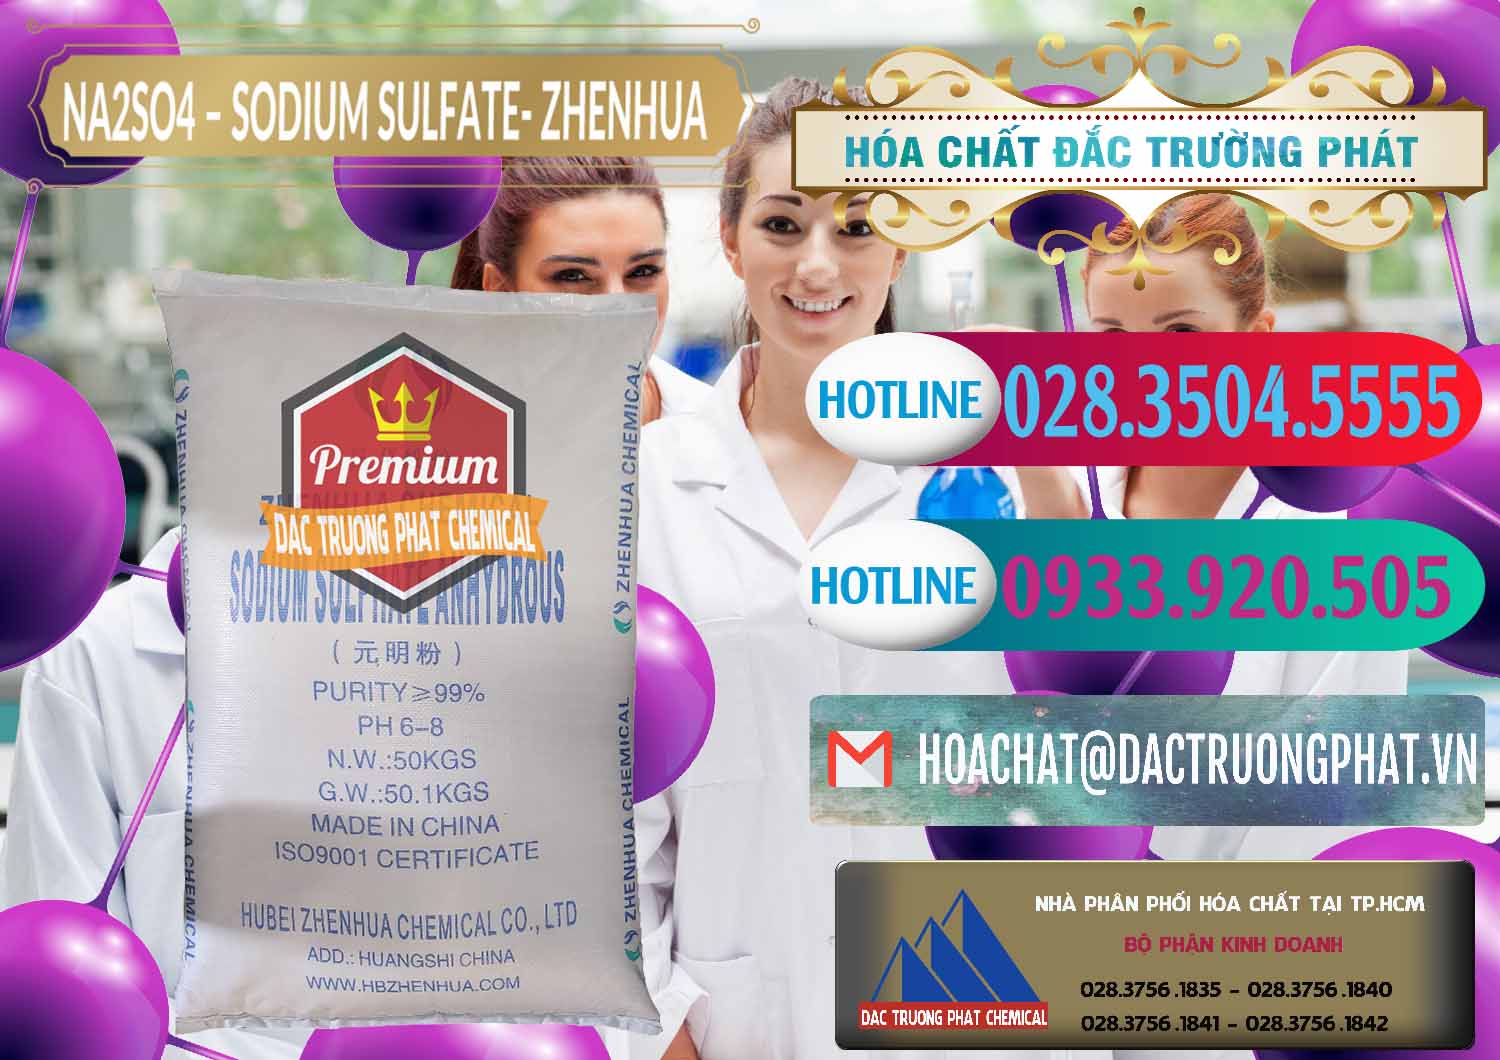 Đơn vị kinh doanh và bán Sodium Sulphate - Muối Sunfat Na2SO4 Zhenhua Trung Quốc China - 0101 - Nơi cung cấp & phân phối hóa chất tại TP.HCM - truongphat.vn